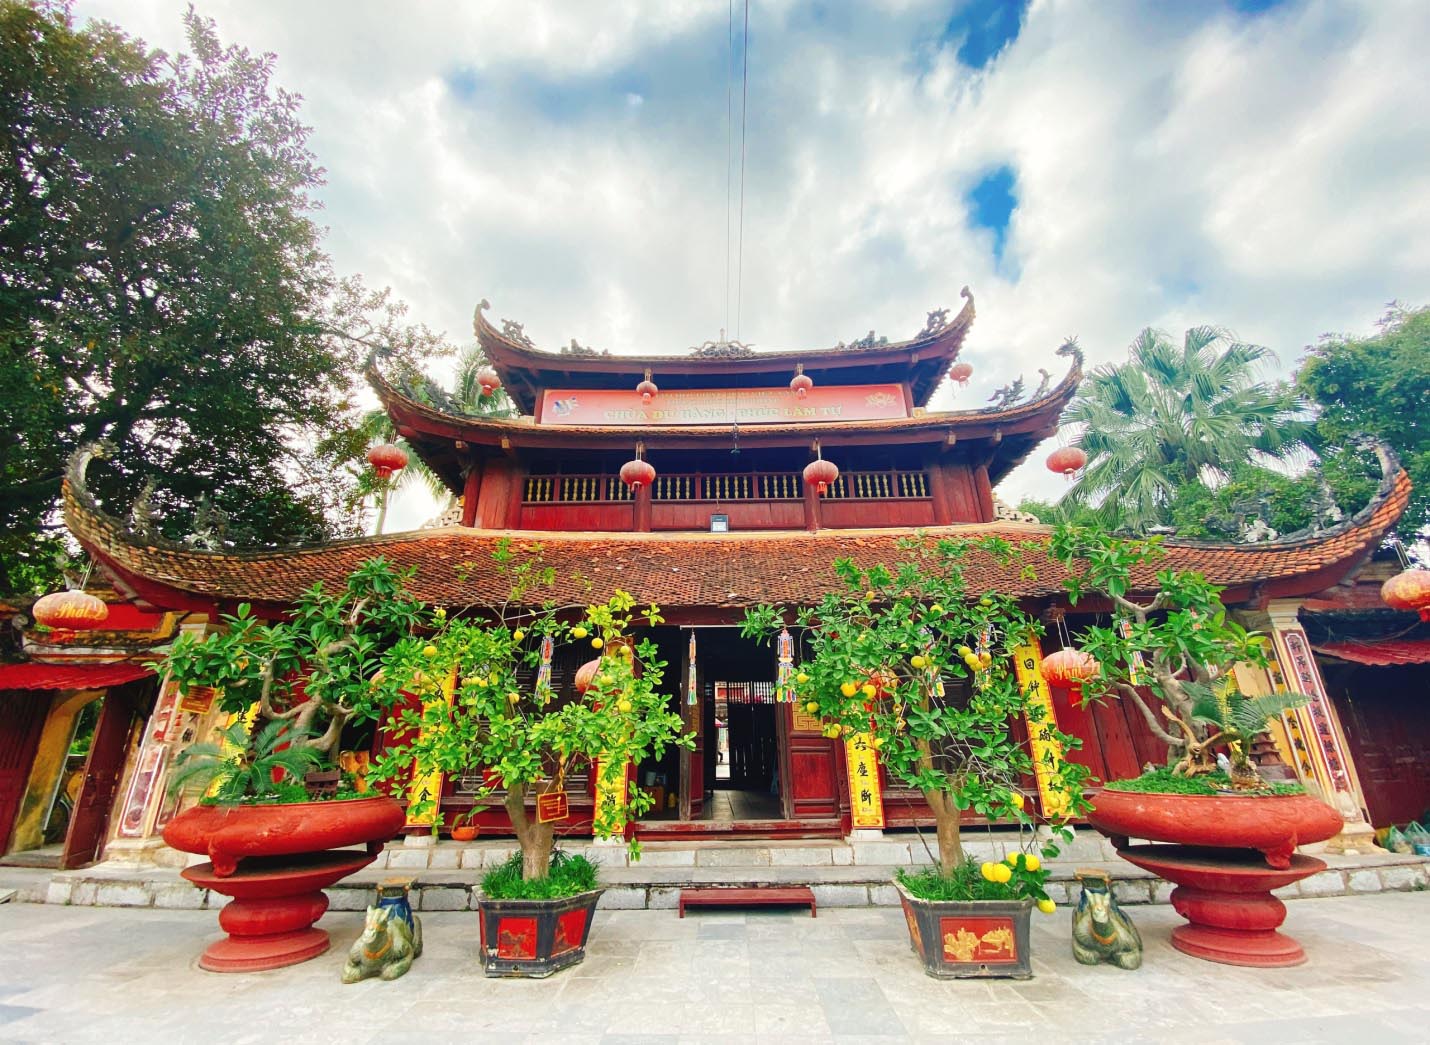 Du Hang Pagoda (Chùa Dư Hàng)